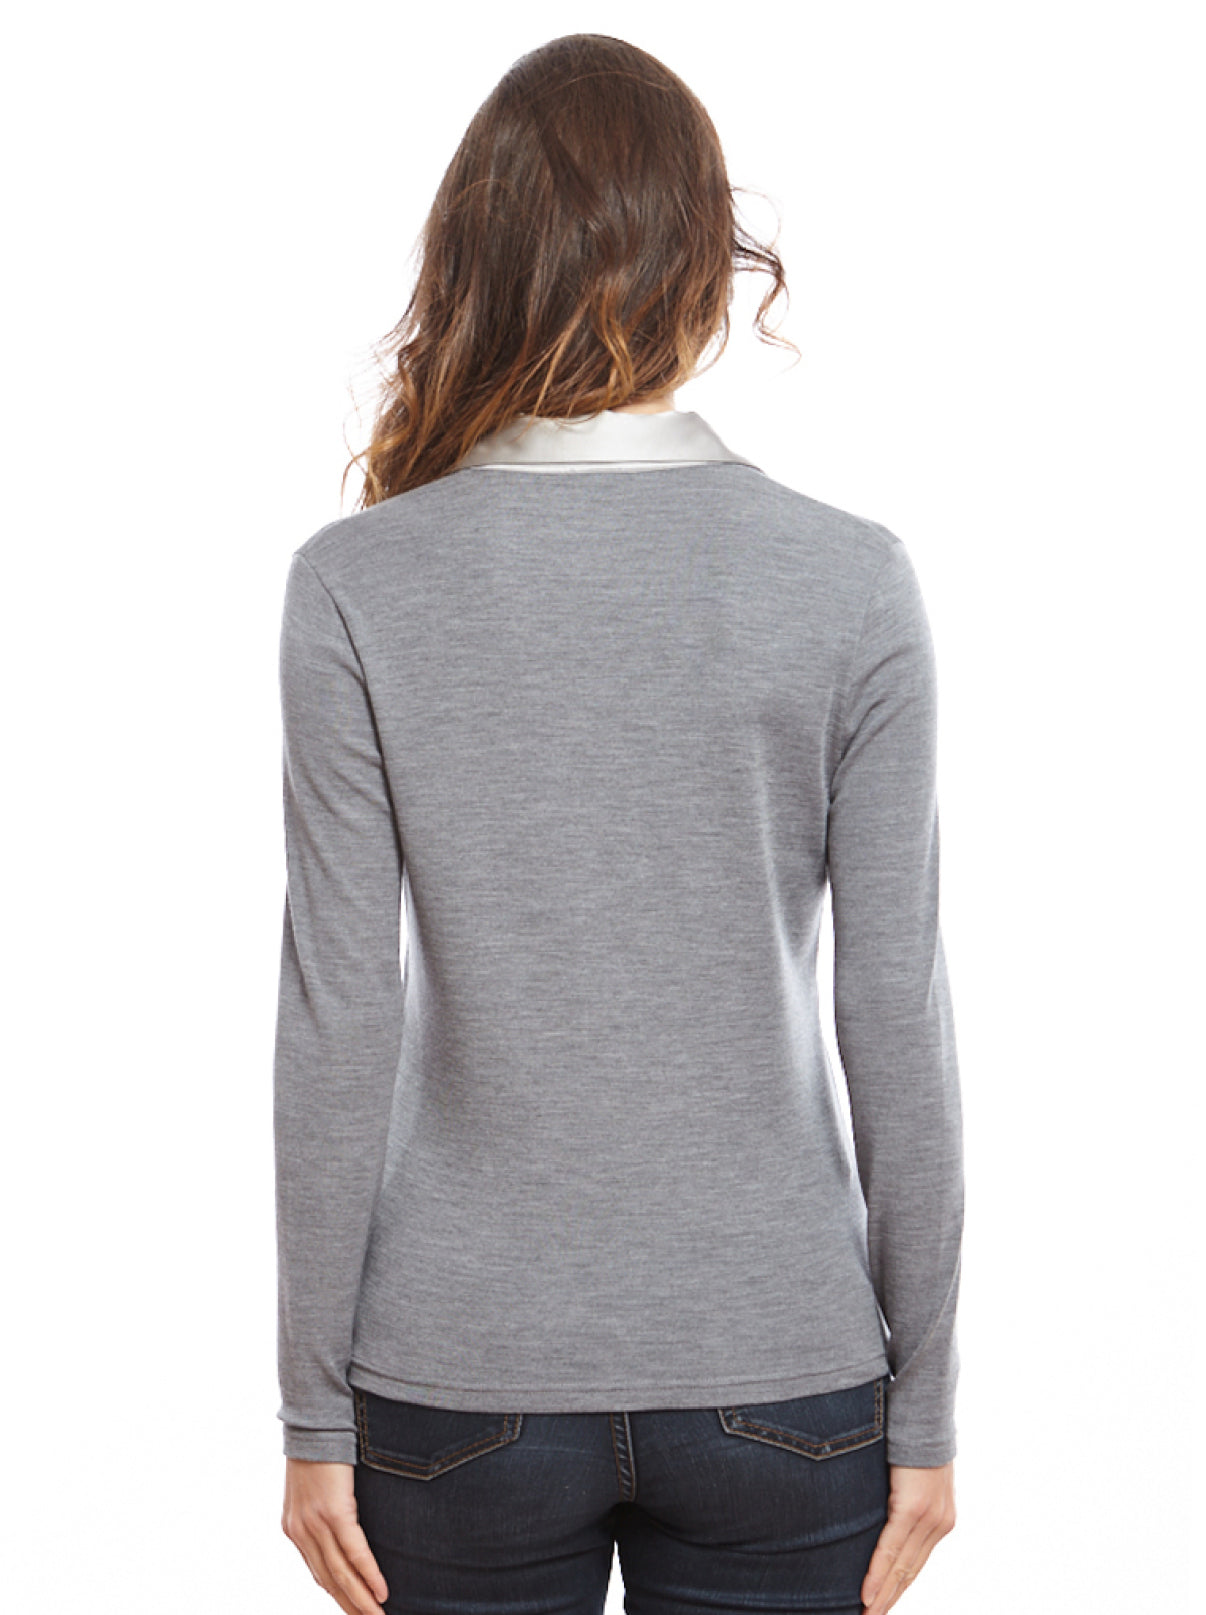 Longsleeves Woman flat Polo-shirt 6352 - Oscalito